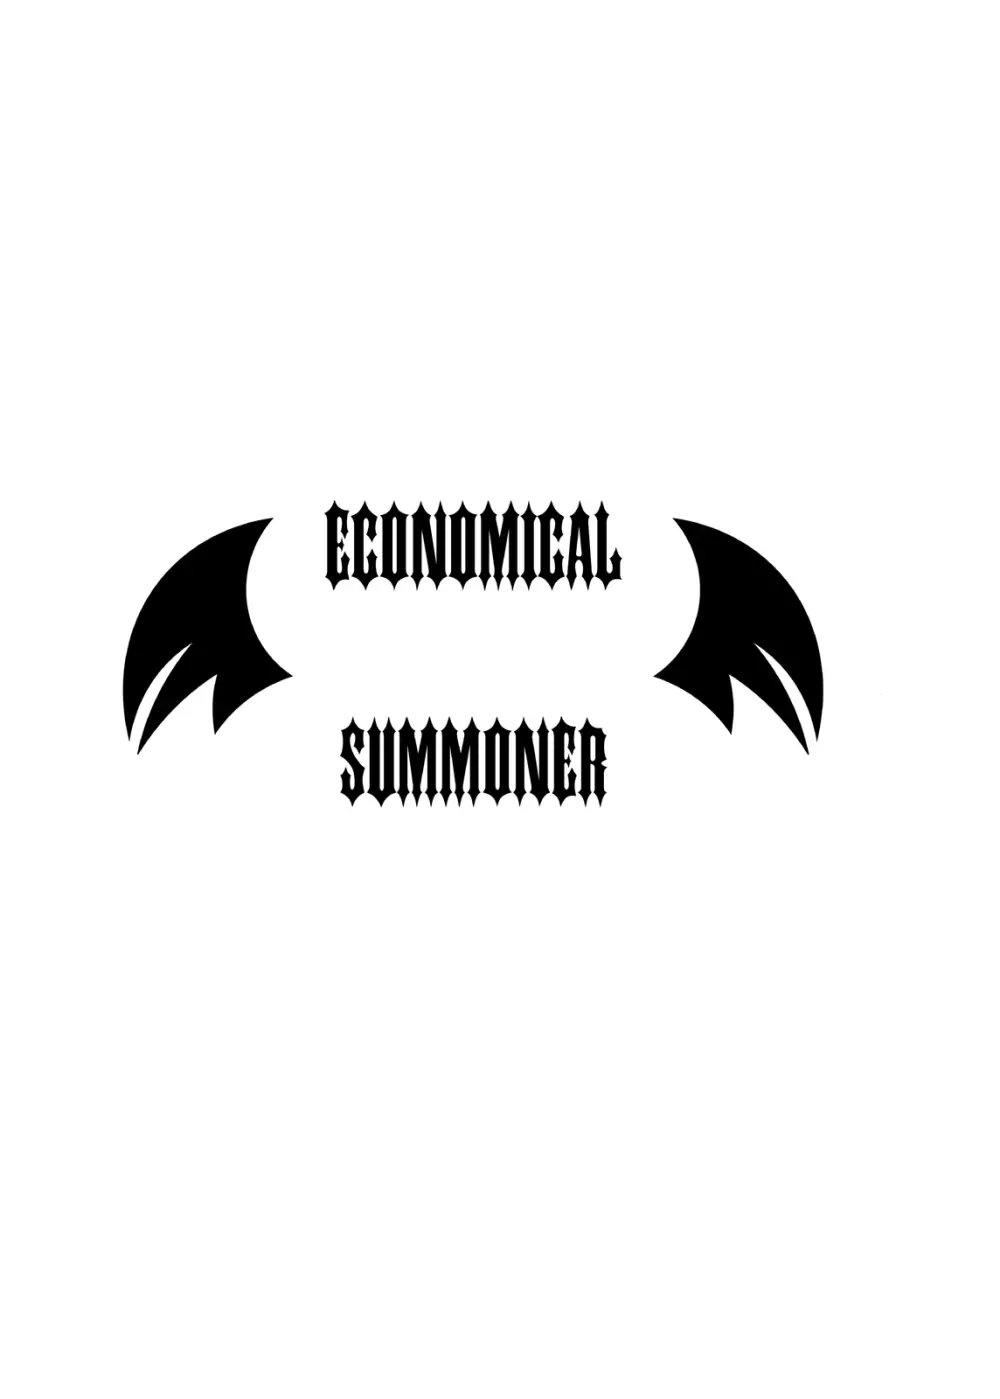 ECONOMICAL SUMMONER